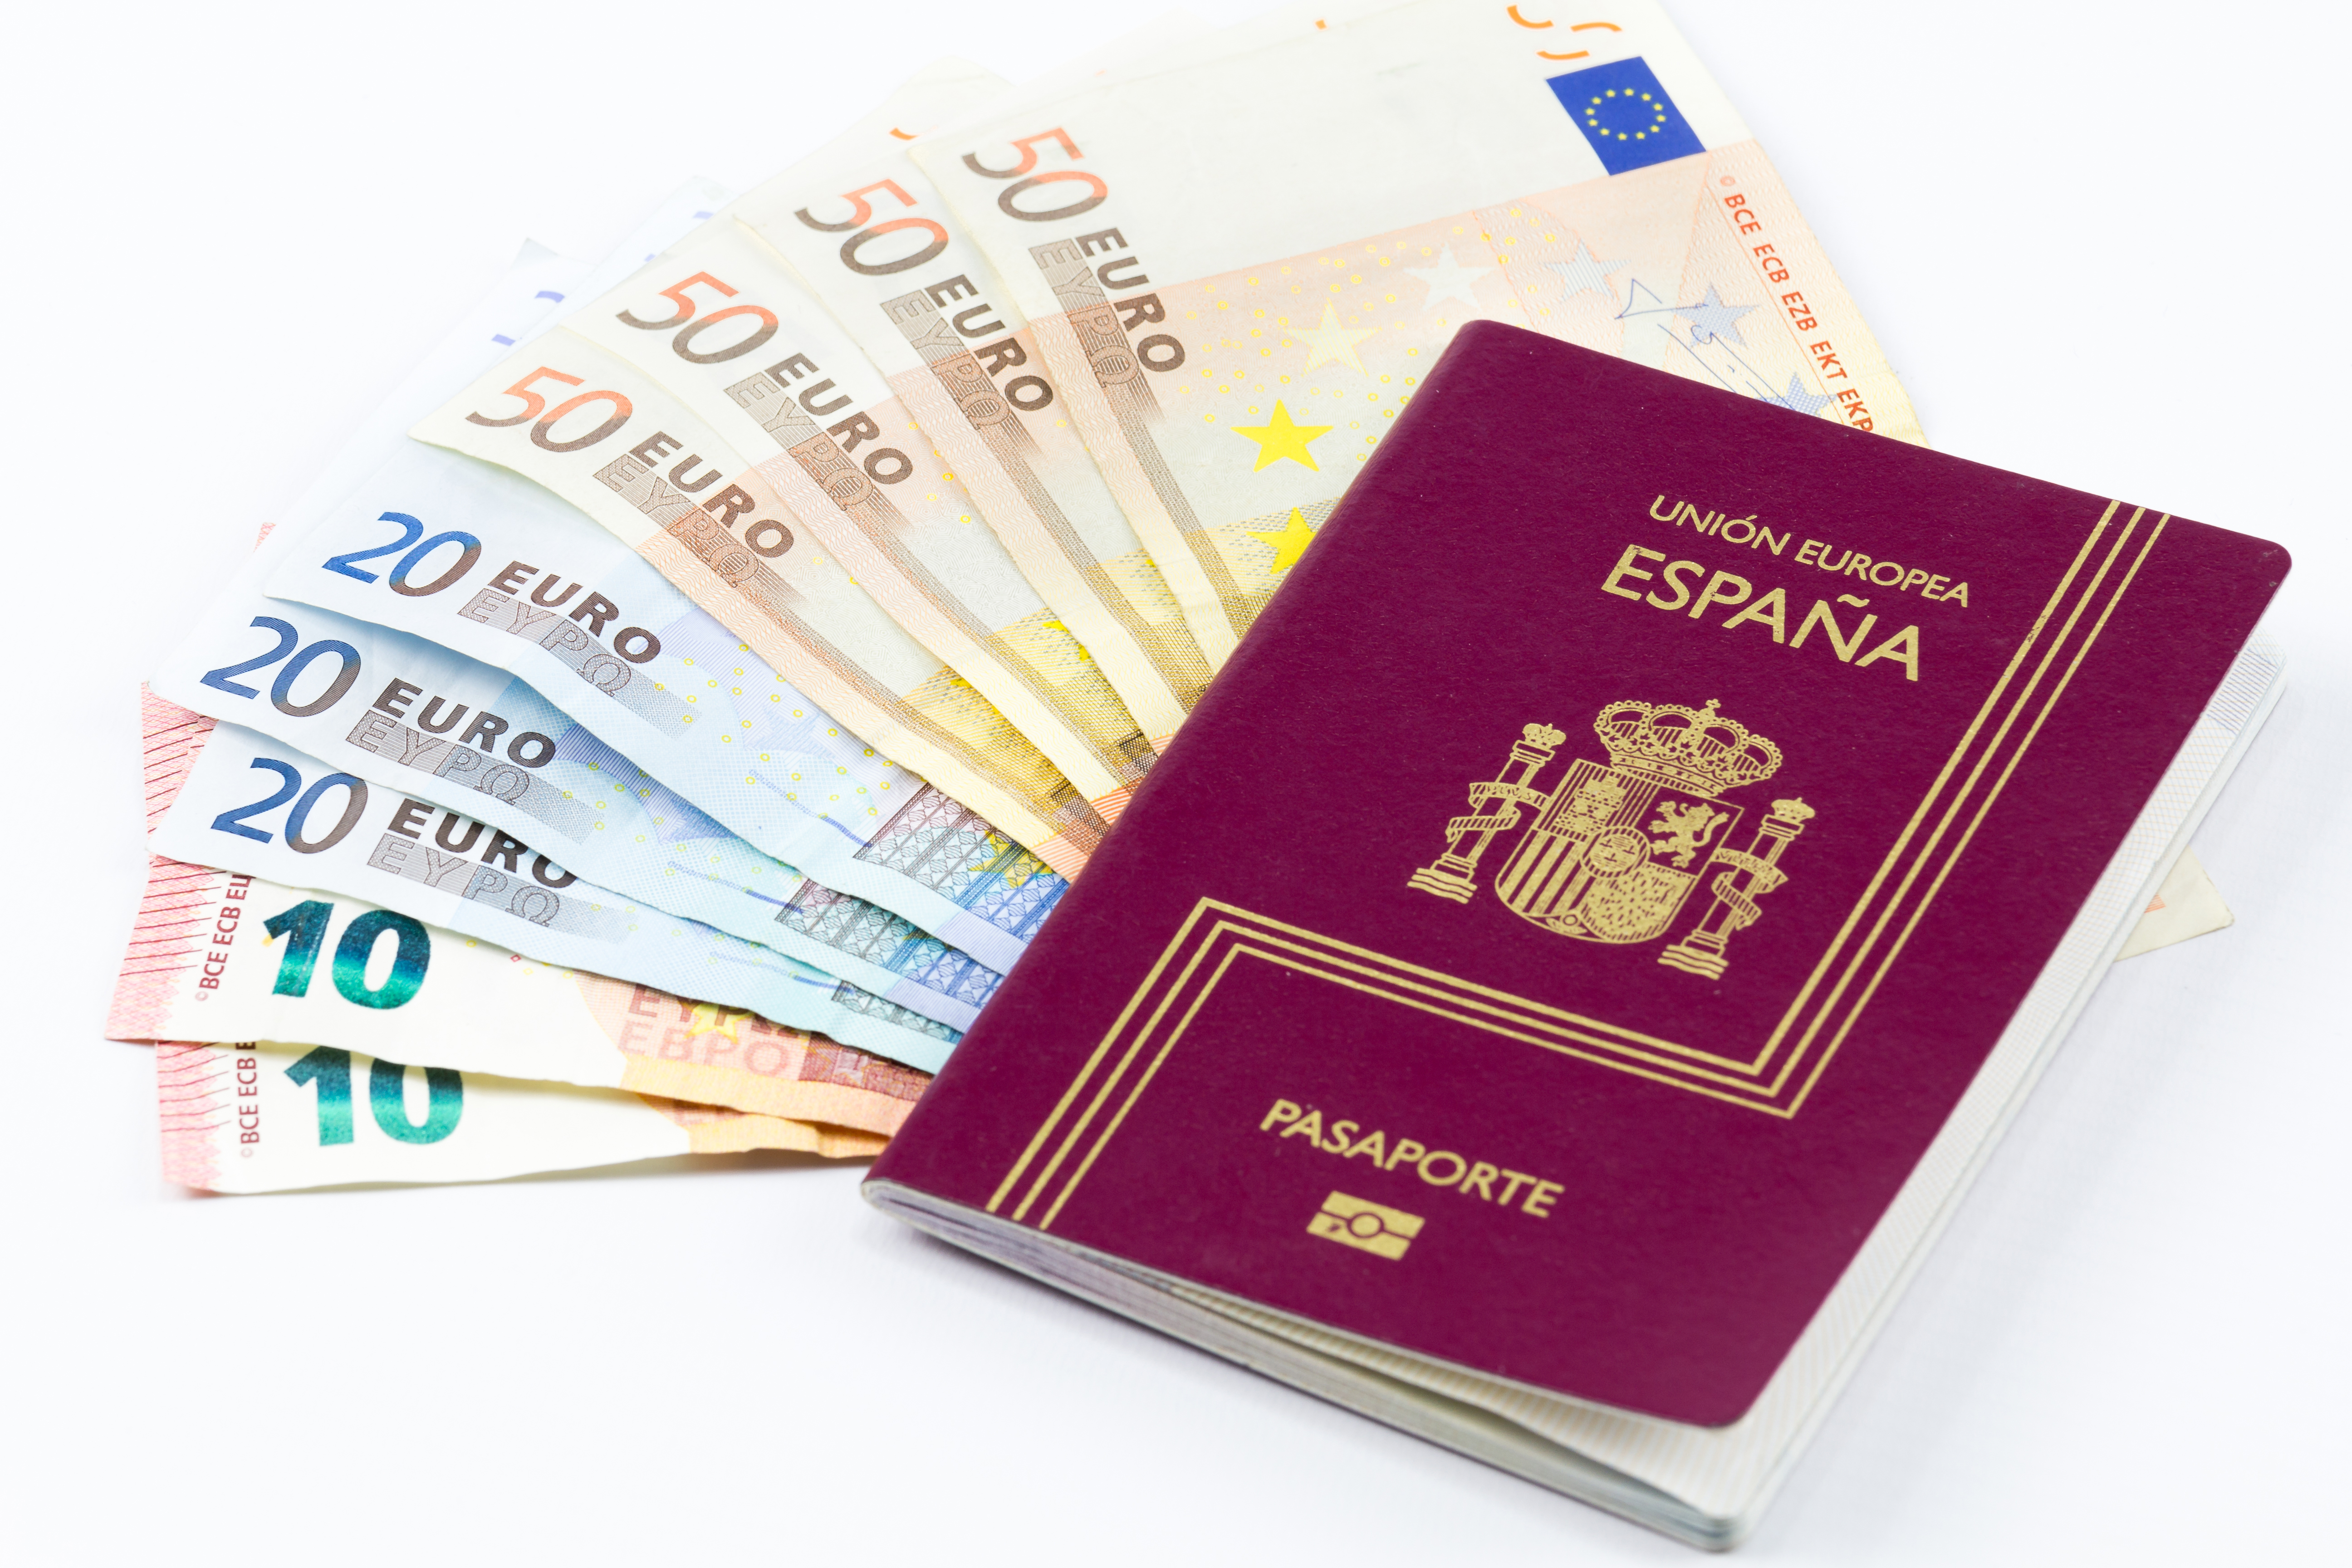 Деньги и паспорт Испании, который можно получить за инвестиции